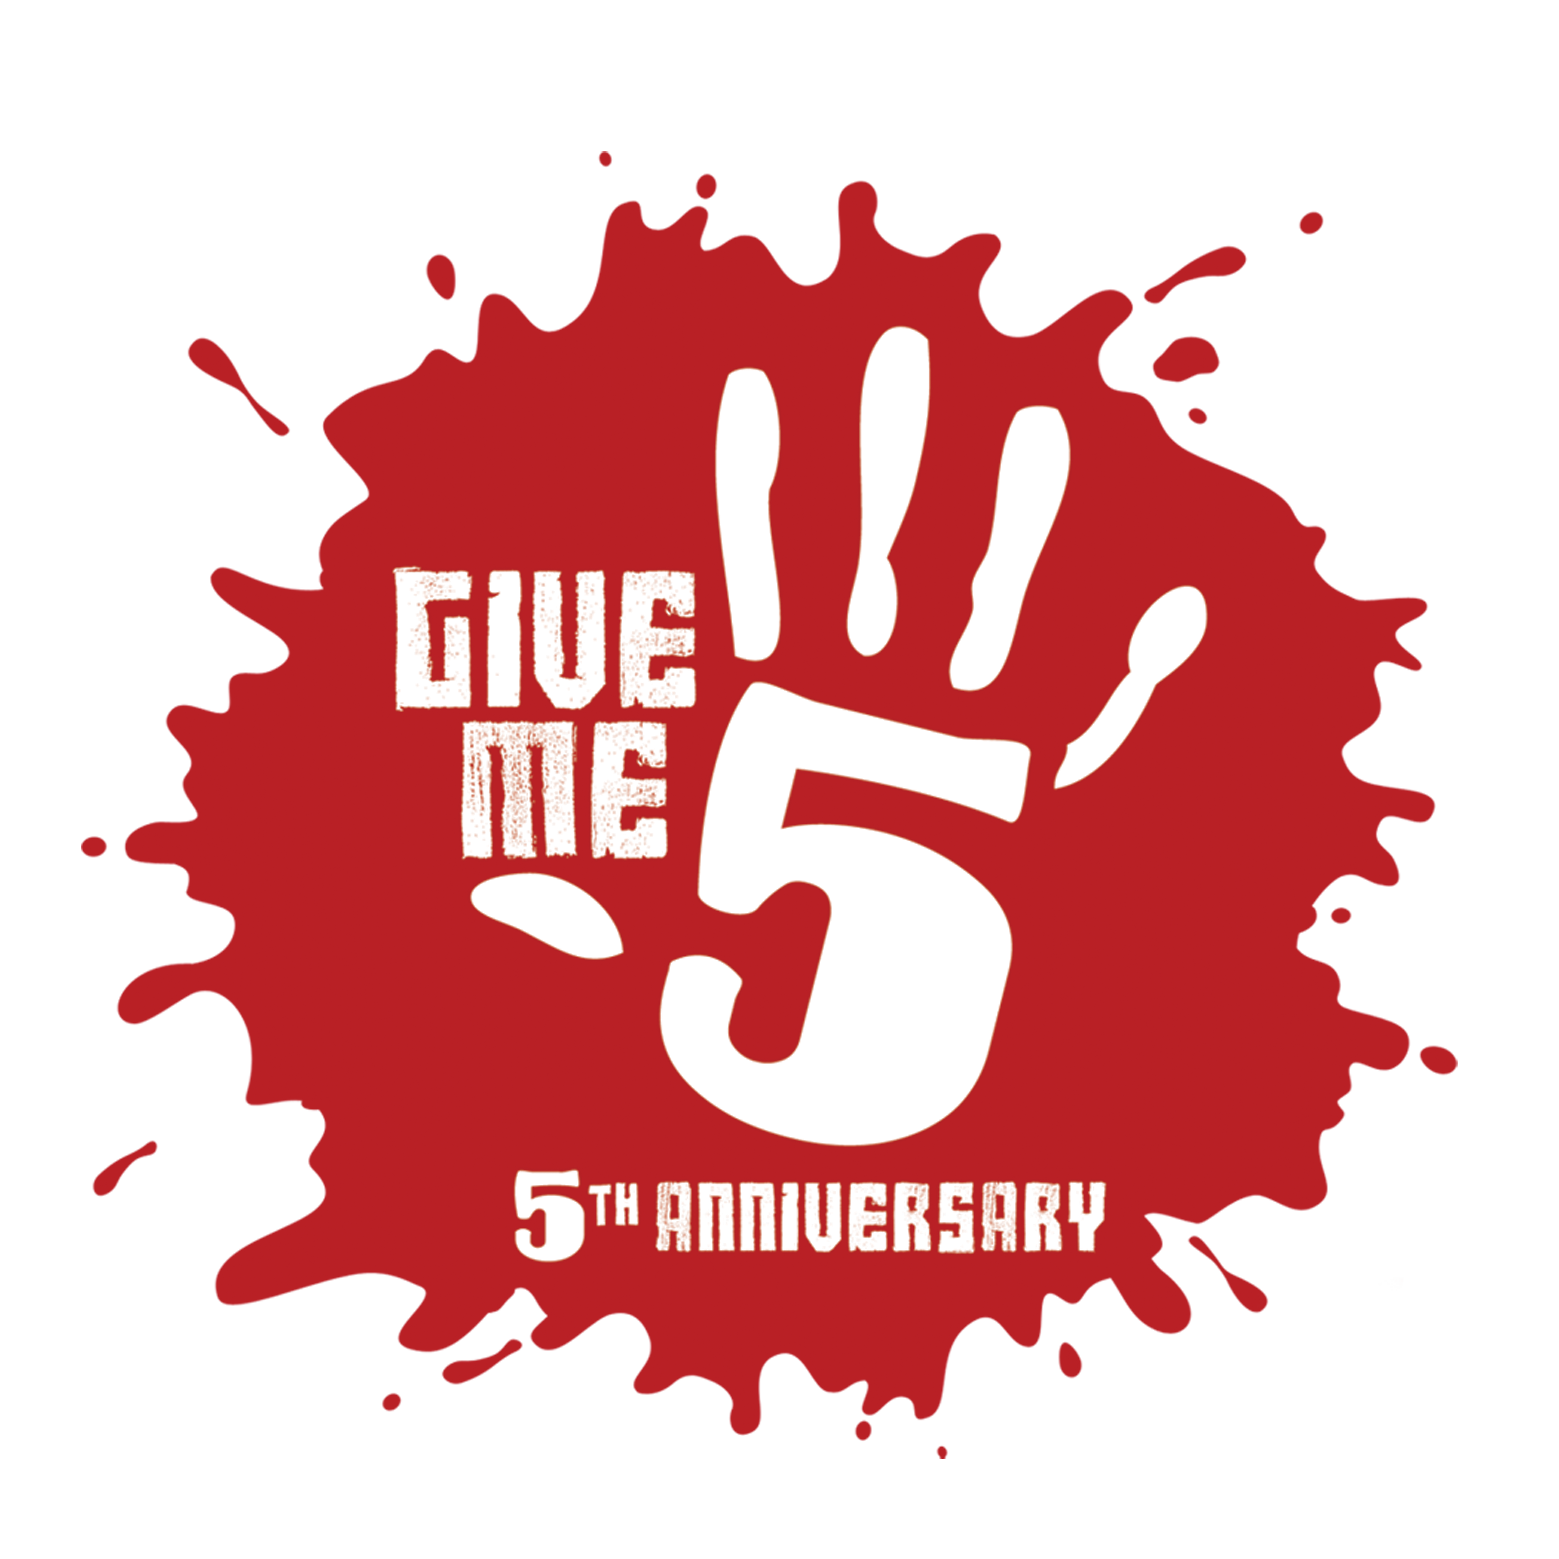 Give Five. Картинки give Five. Эмблема give me Five. 5th Anniversary. Счастливая пятерка